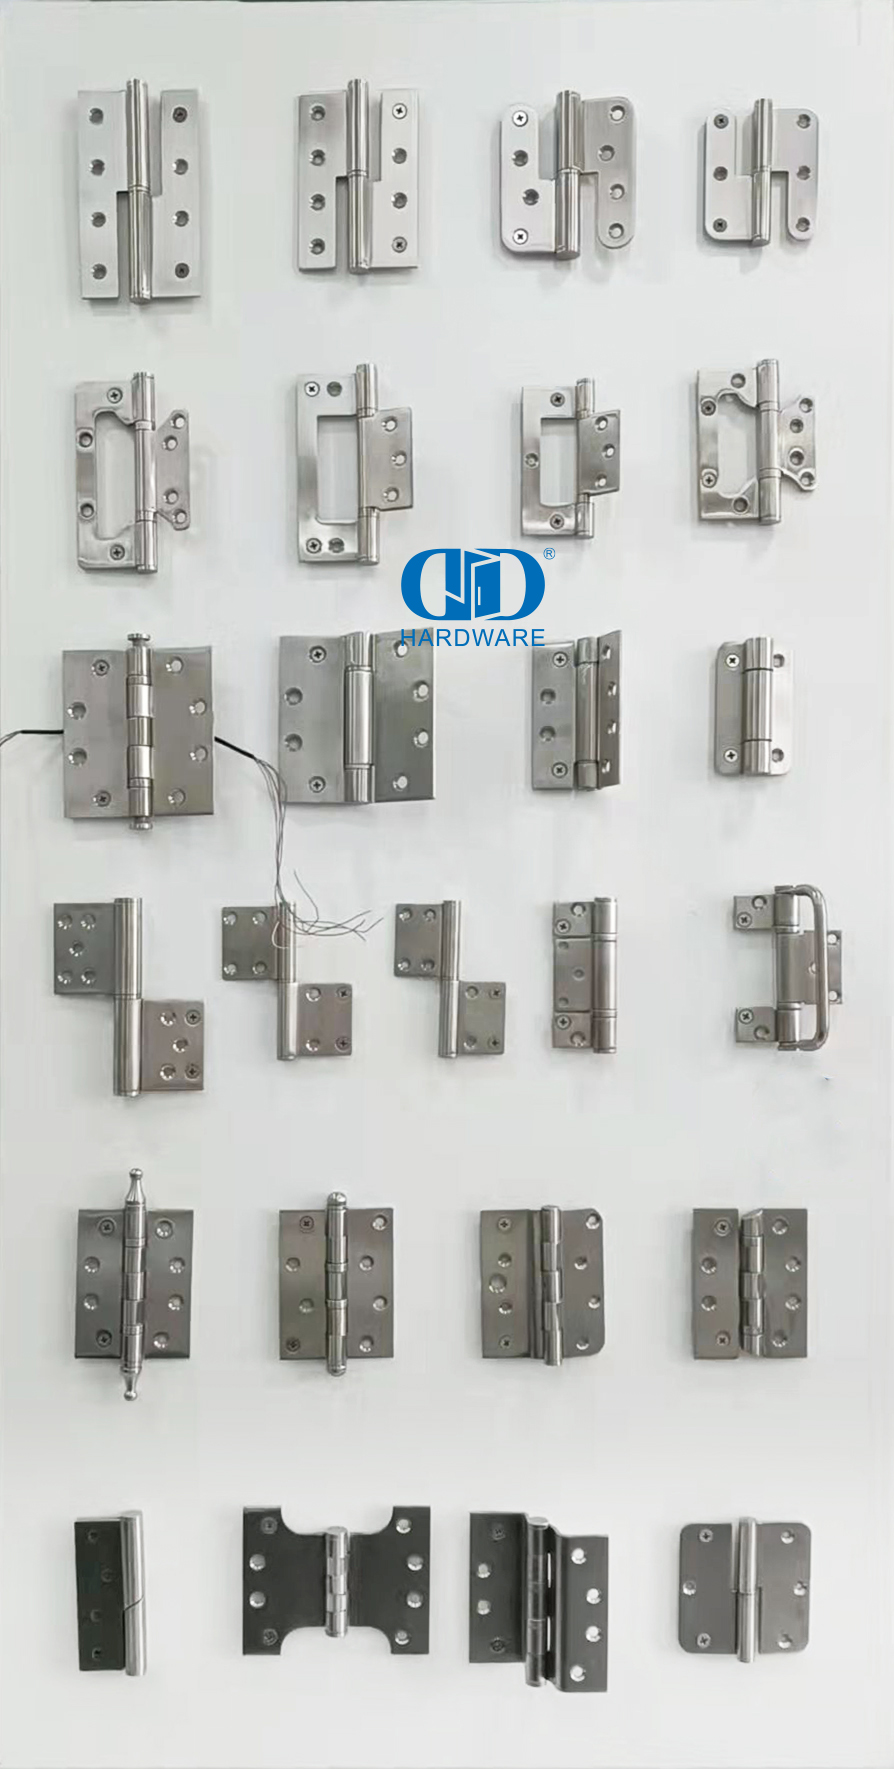 Bisagra de seguridad única de hardware de puerta de metal de acero inoxidable de cinco nudillos-DDSS015-B